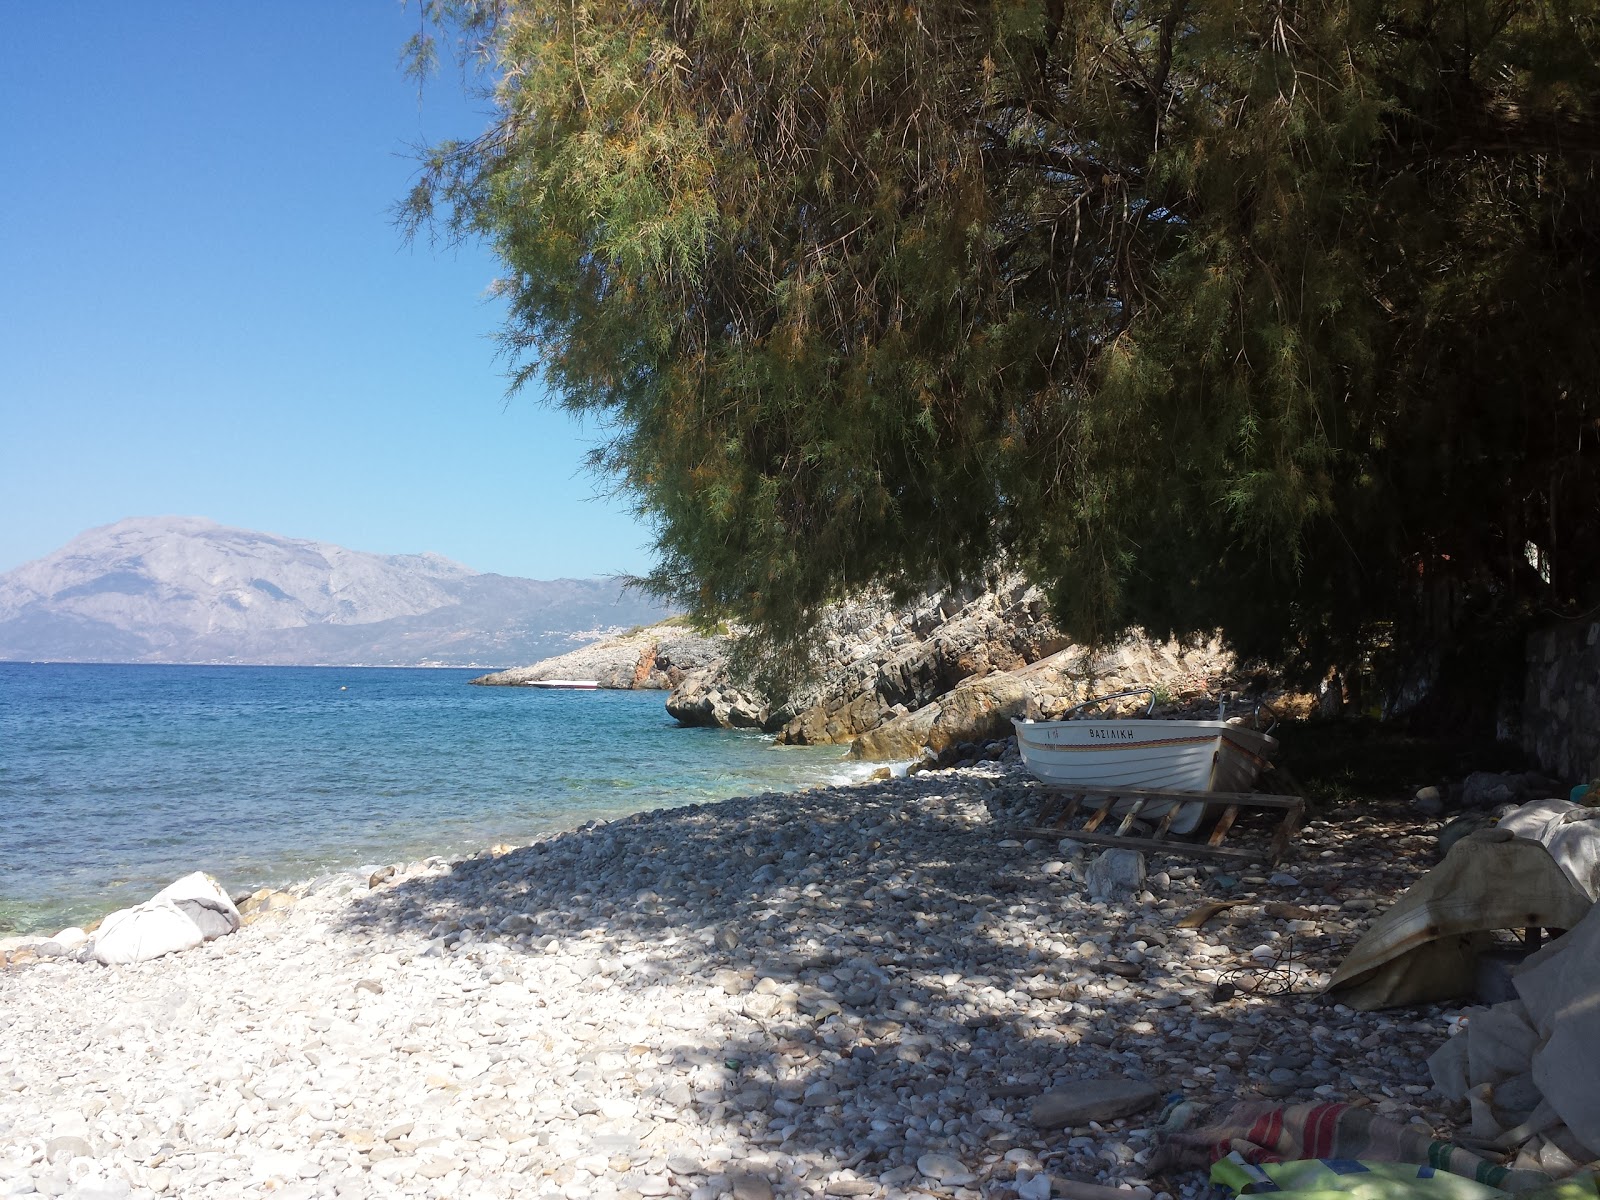 Kyrgianni beach'in fotoğrafı hafif çakıl yüzey ile